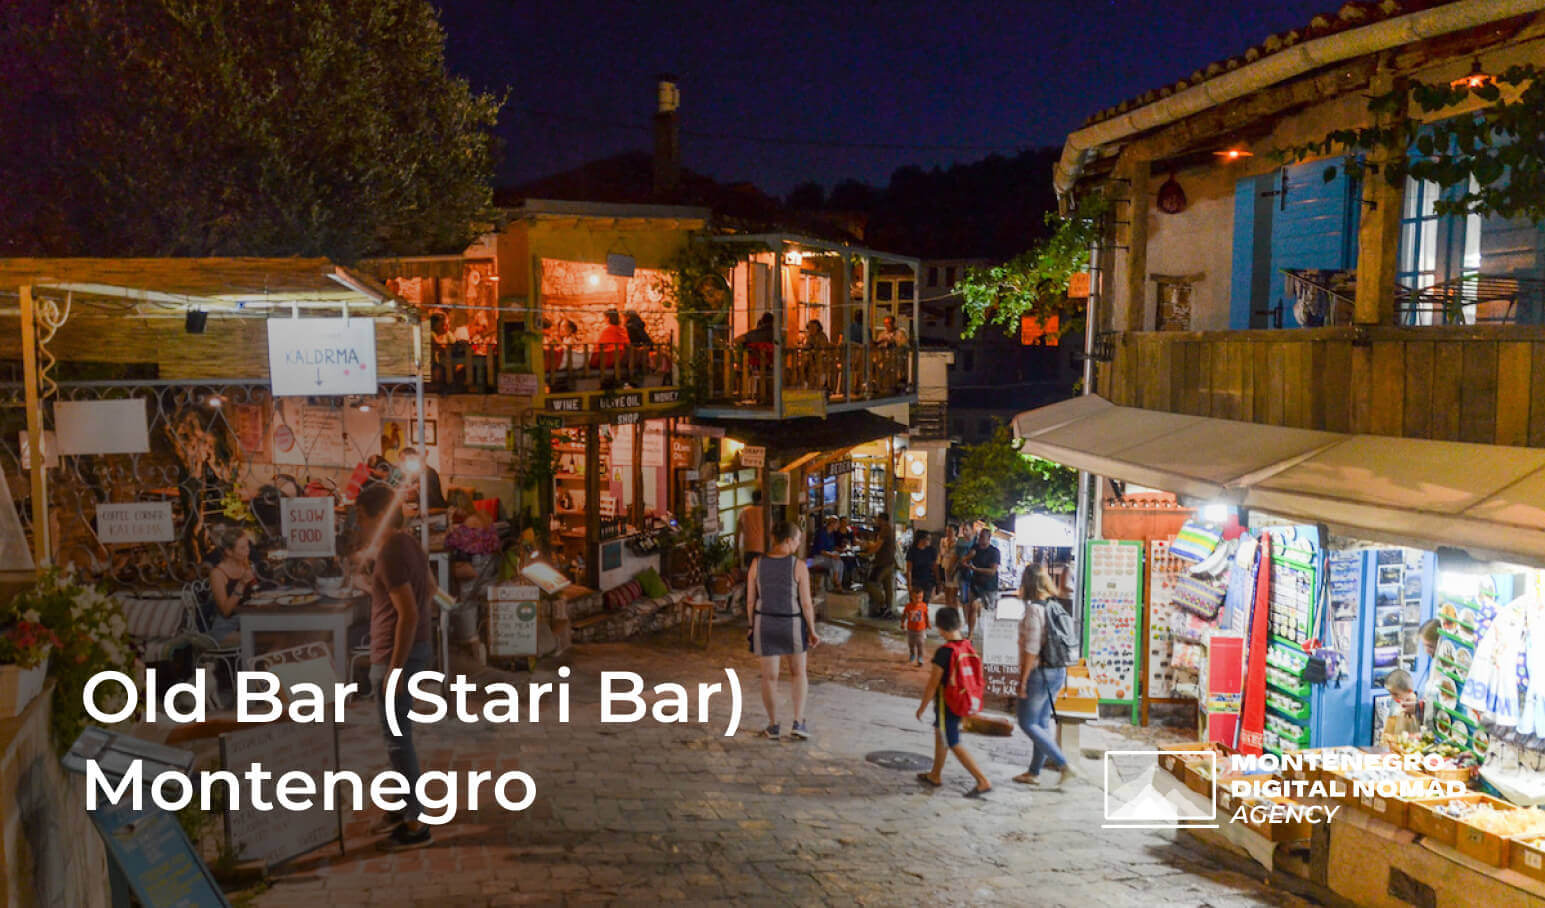 Image of Old Bar (Stari Bar) Montenegro at night